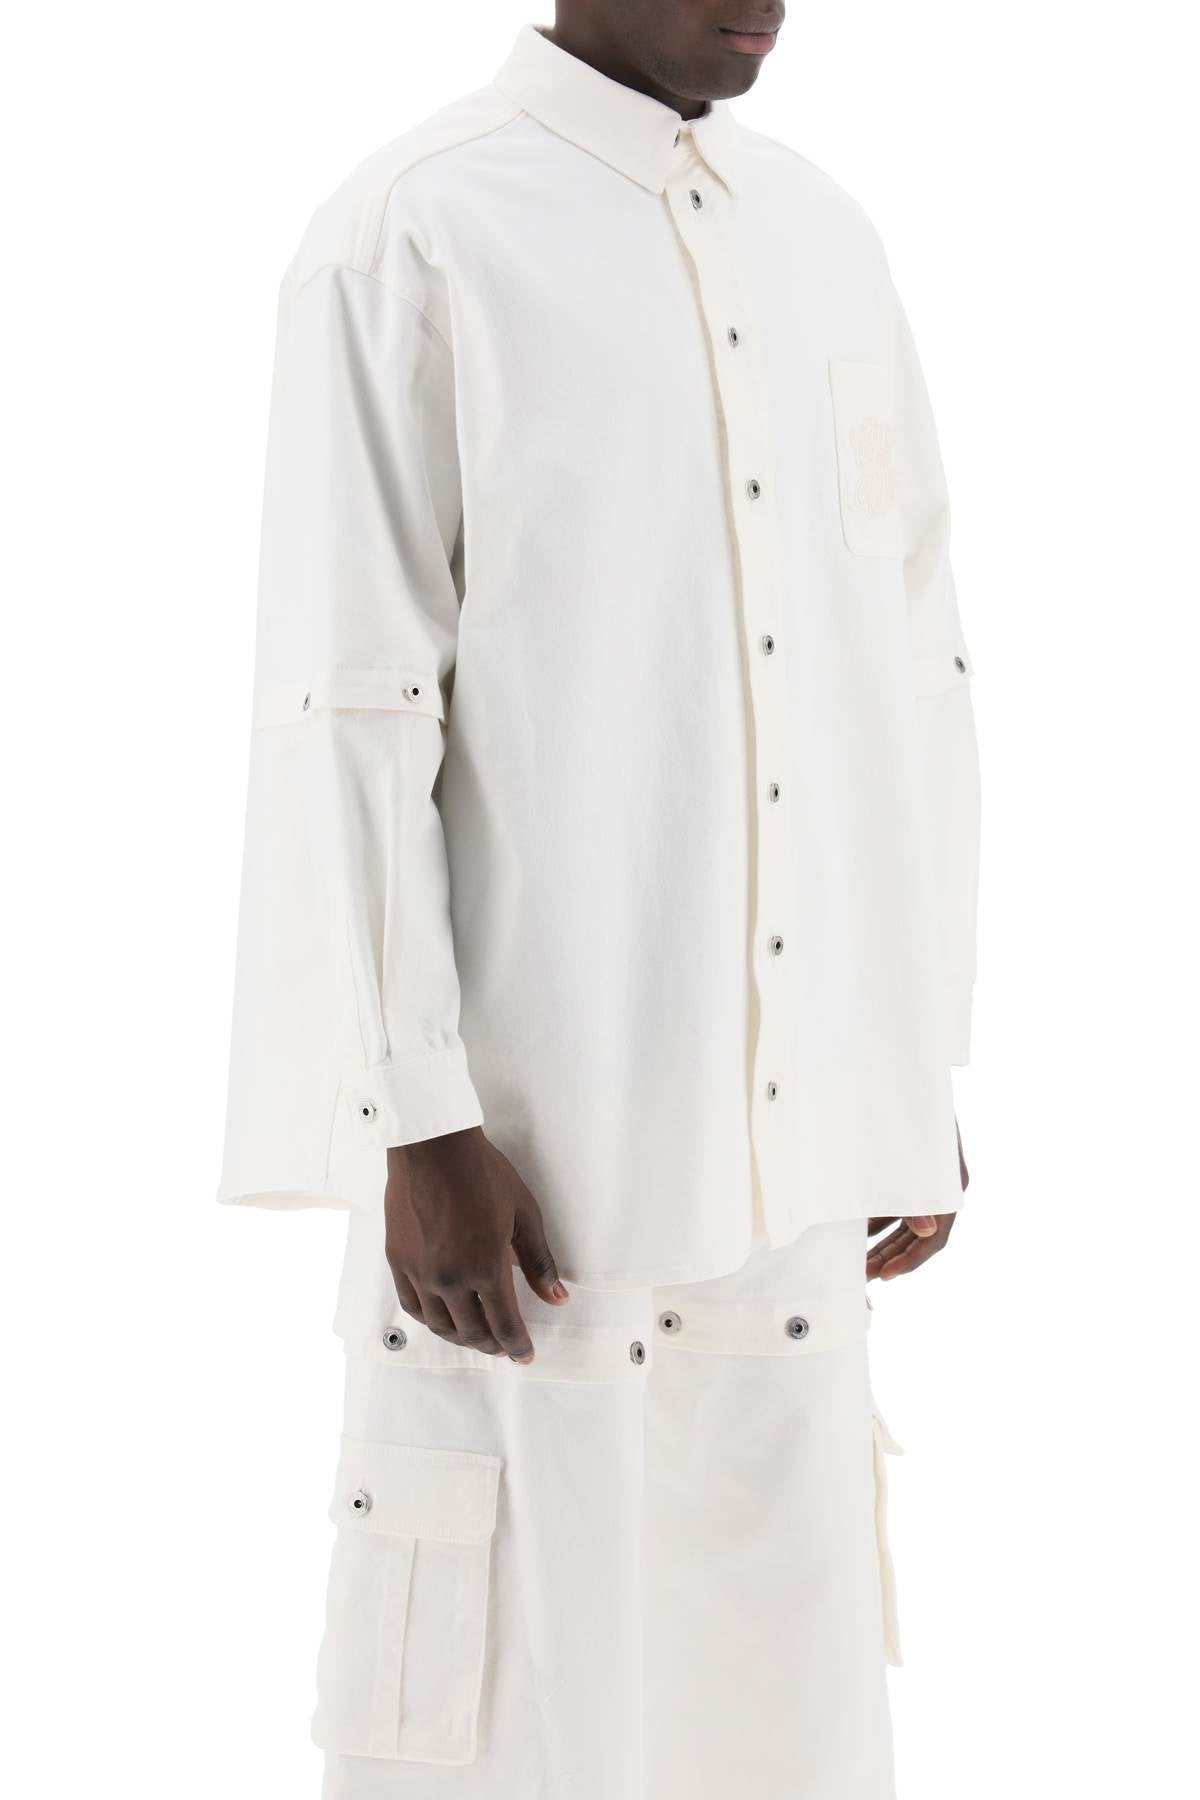 90Sロゴ ロウホワイト デニム オーバーシャツ for メンズ